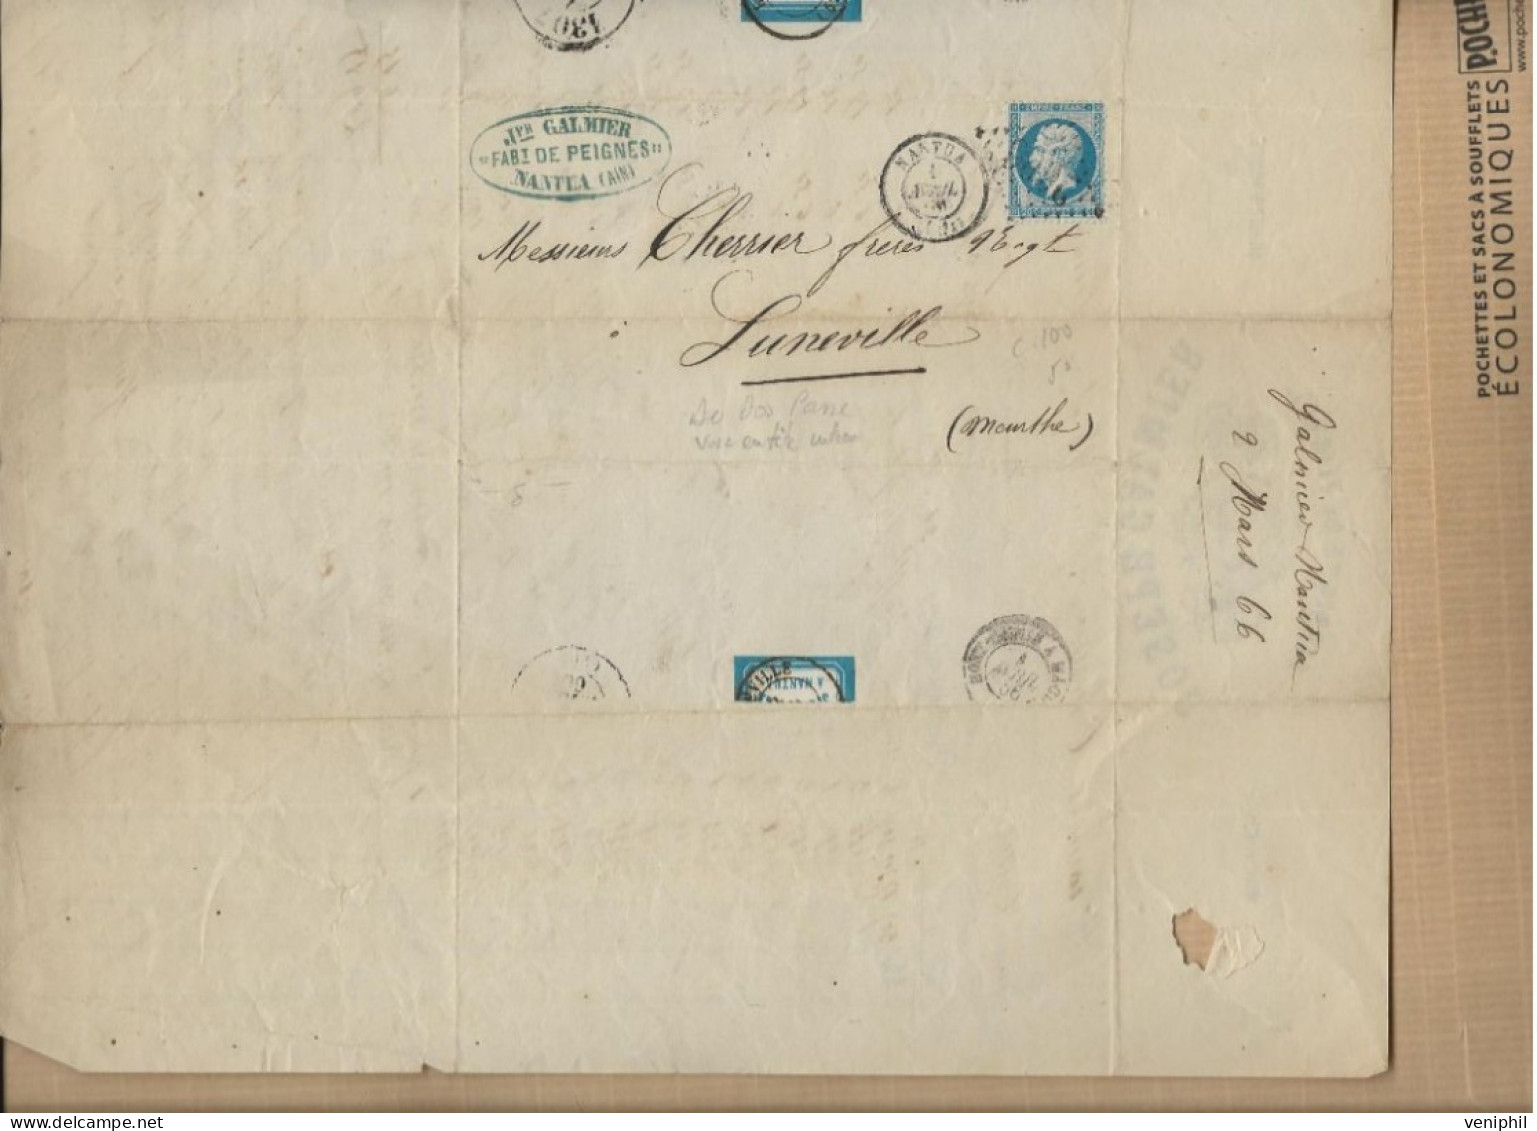 FABRIQUE DE PEIGNES - JOSEPH GALMIER- NANTUA -AIN - ANNEE 1866 - AFFRANCHIE N° 22 +CAD NANTUA - Old Professions